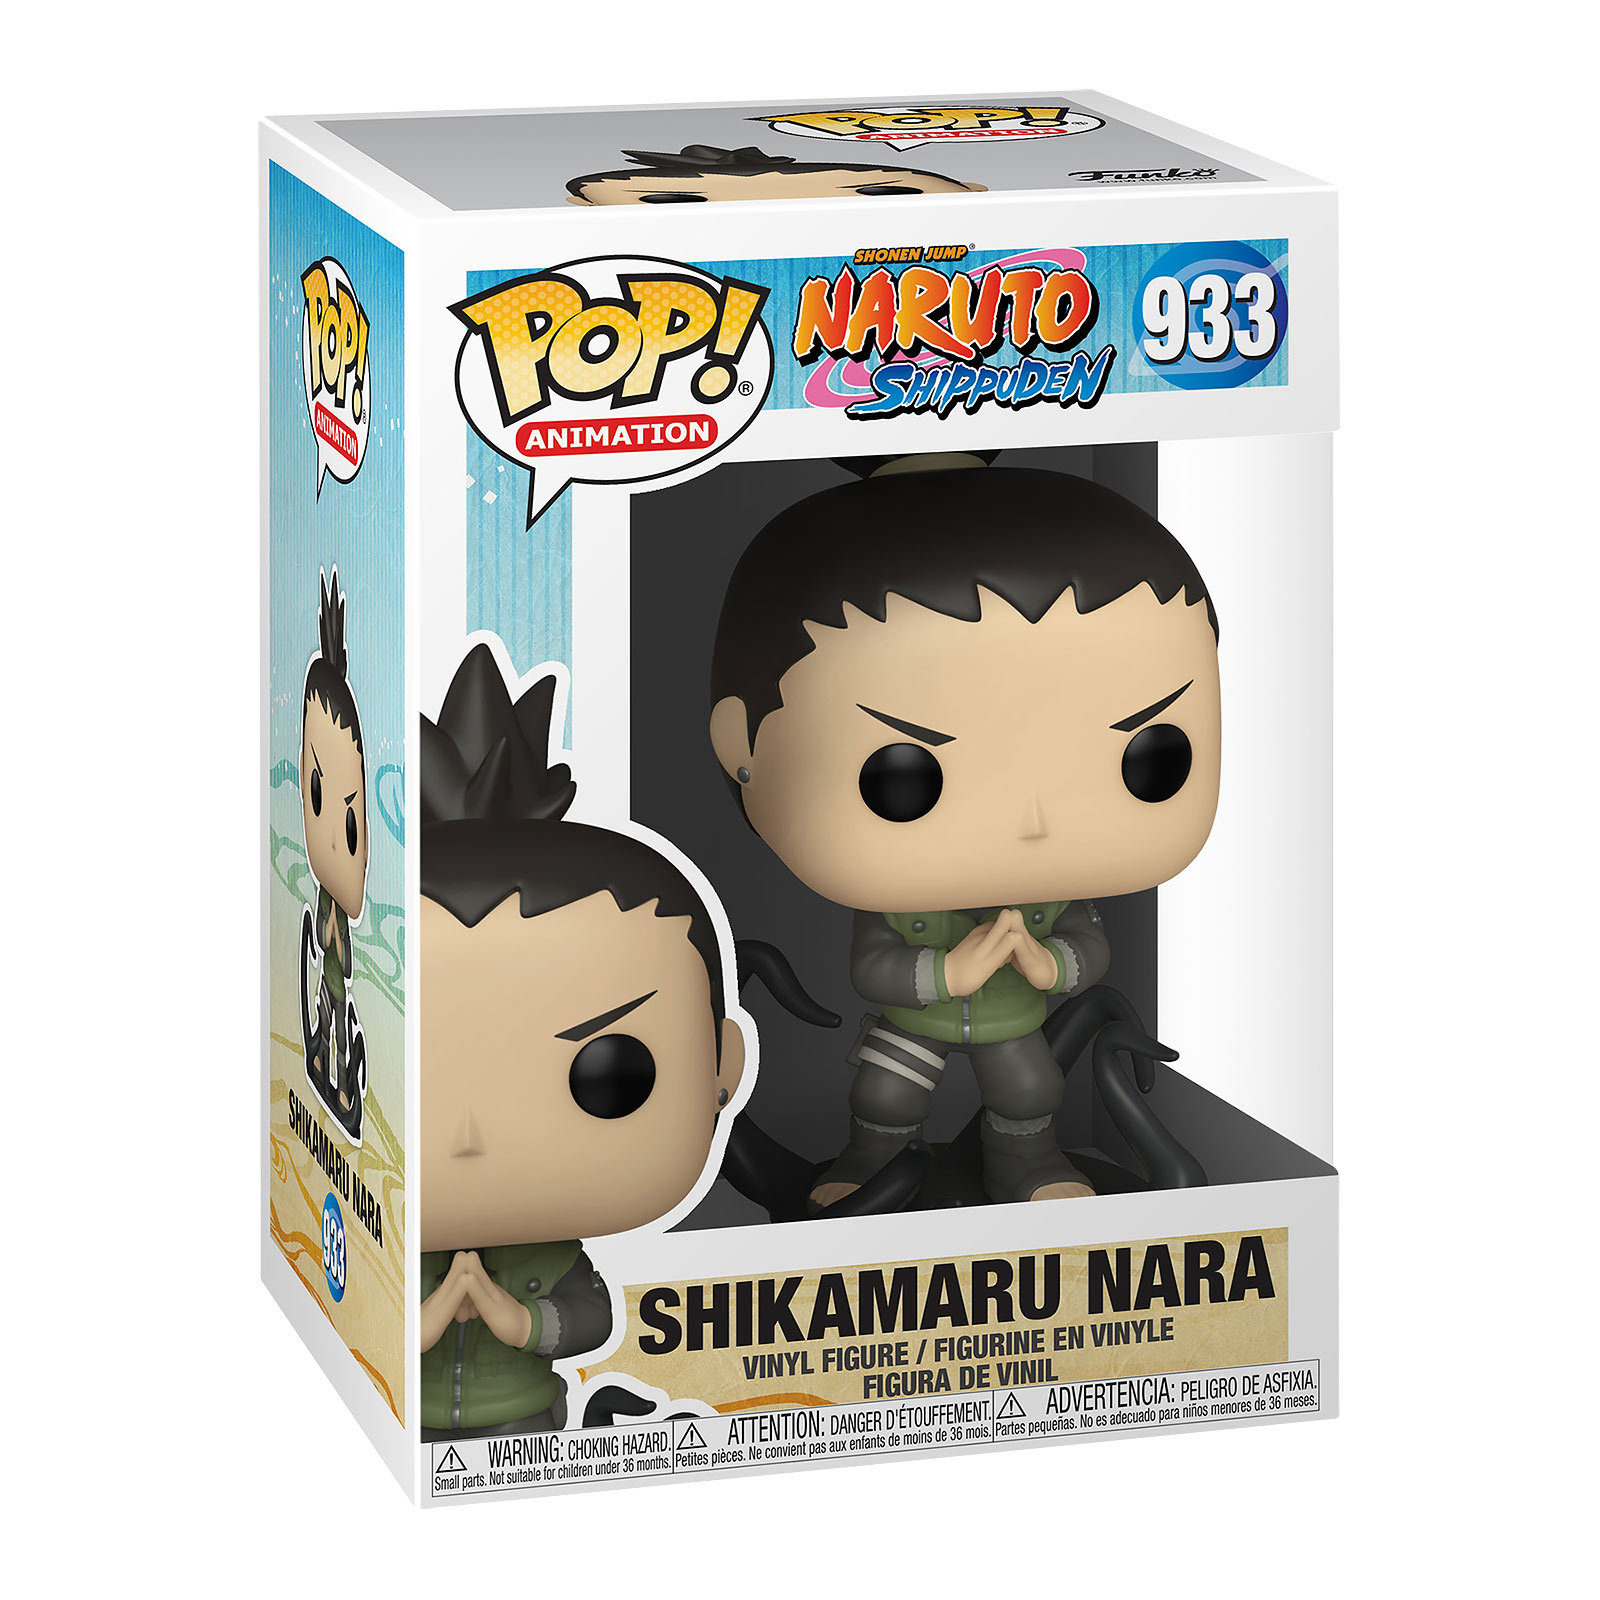 Naruto - Shikamaru Nara Funko Pop figure